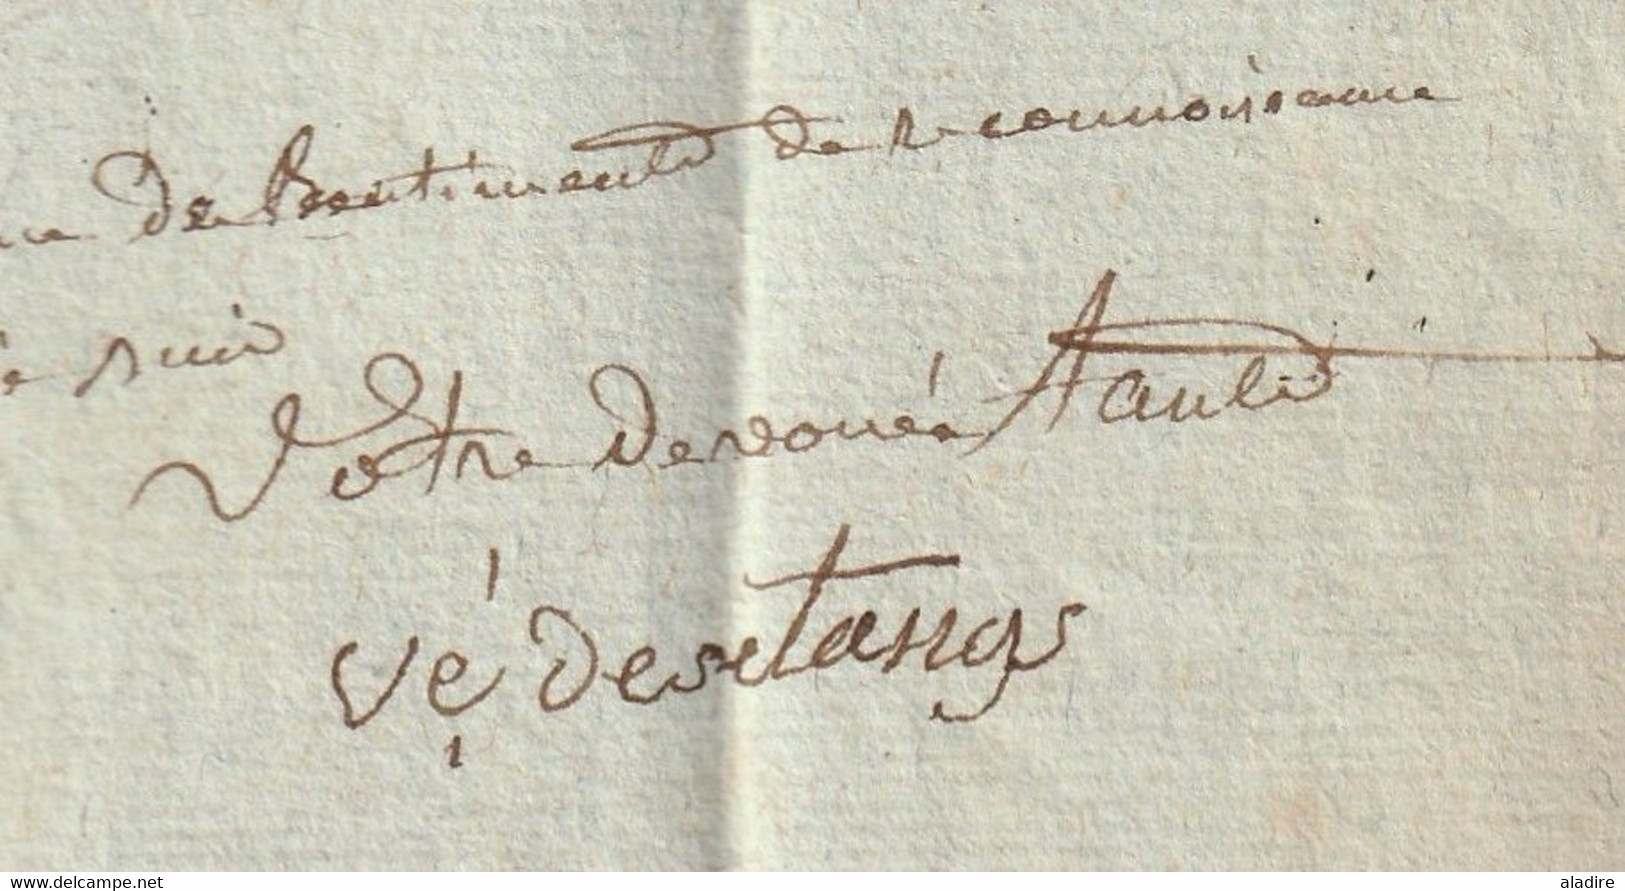 1813 - Rare marque Postale MONTIERENDER, Montier  en Der, Haute Marne sur Lettre pliée avec corresp famil vers Paris